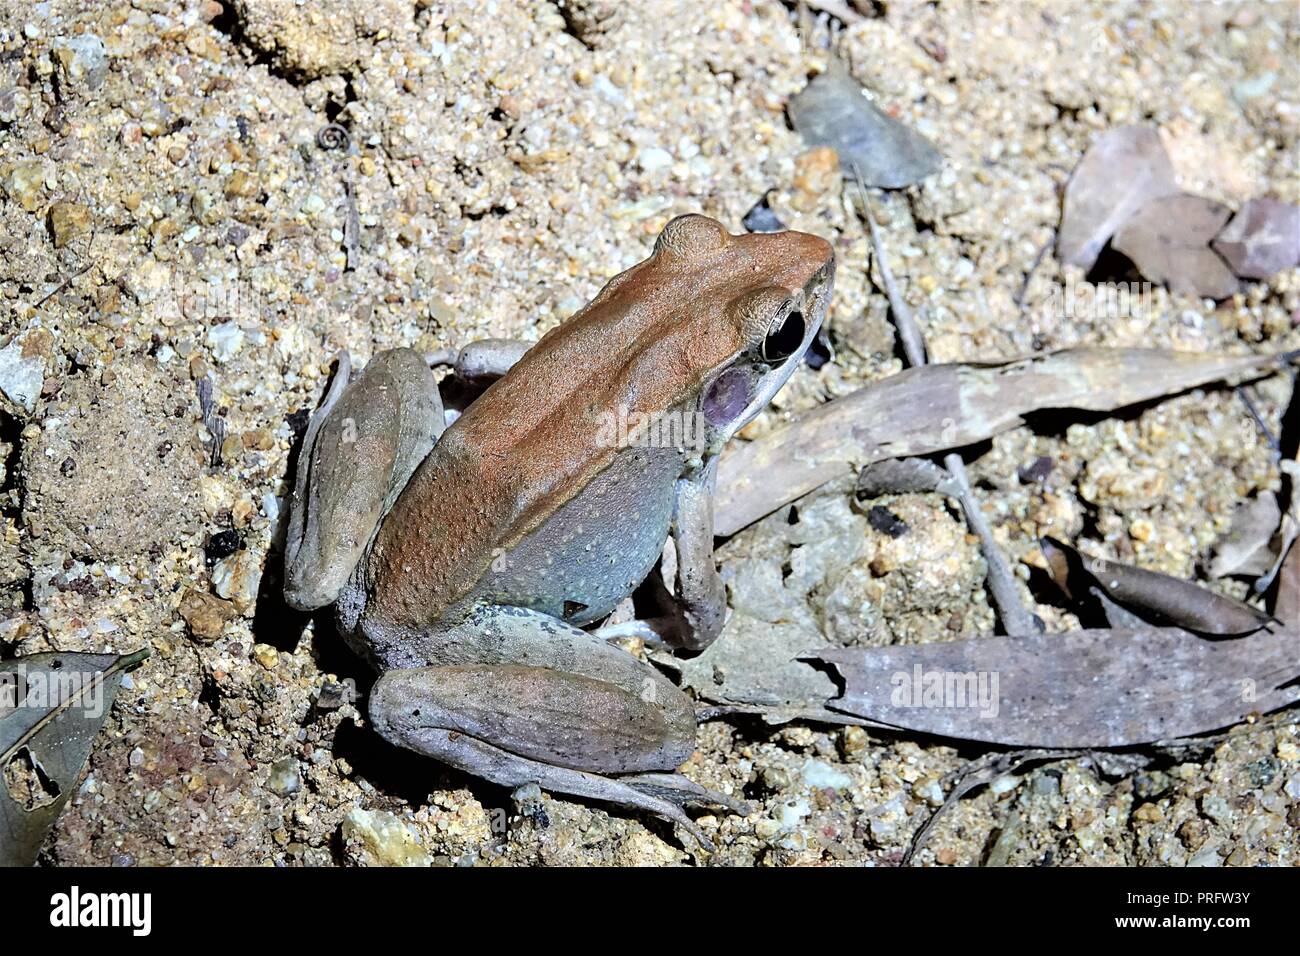 Australian Woodfrog, Papurana daemeli, Cape York foresta pluviale, Kutini-Payamu (ferro gamma Parco Nazionale), estremo Nord Queensland, Australia Foto Stock